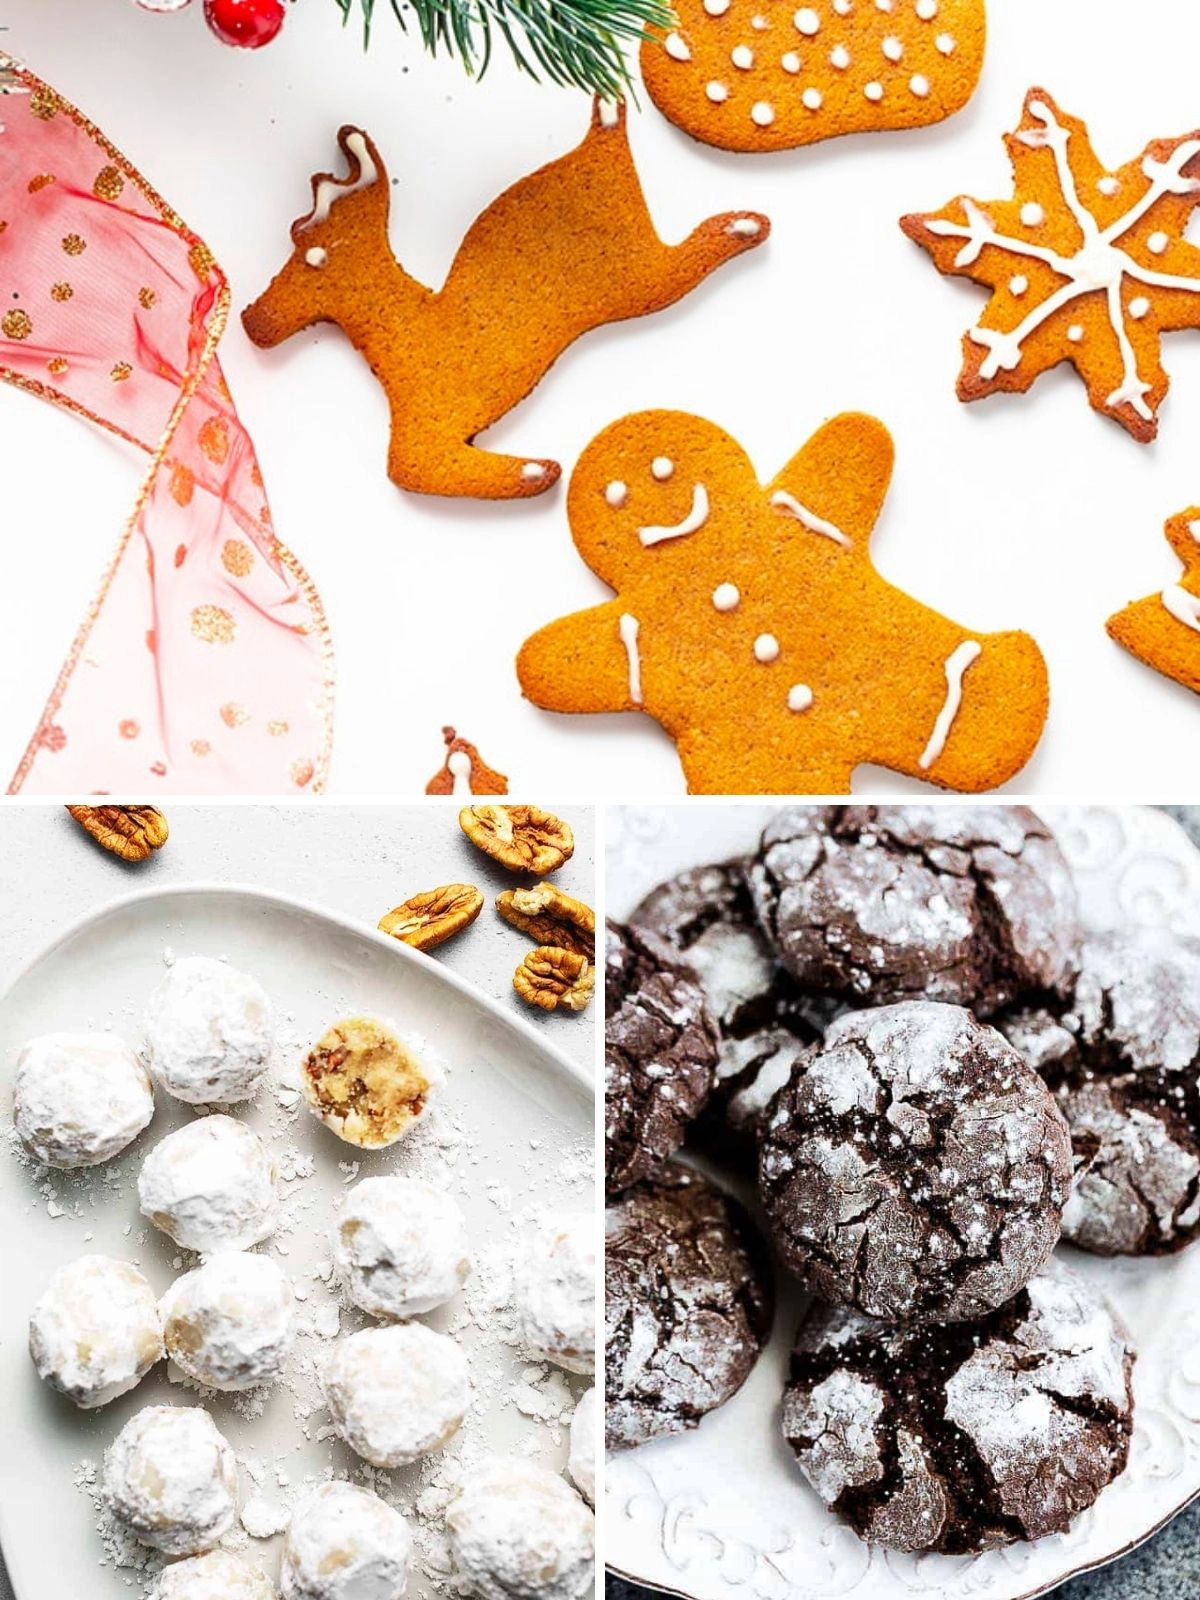 Diabetic holiday cookies gingerbread men, powdered sugar cookies and chocolate crinkle cookies. 